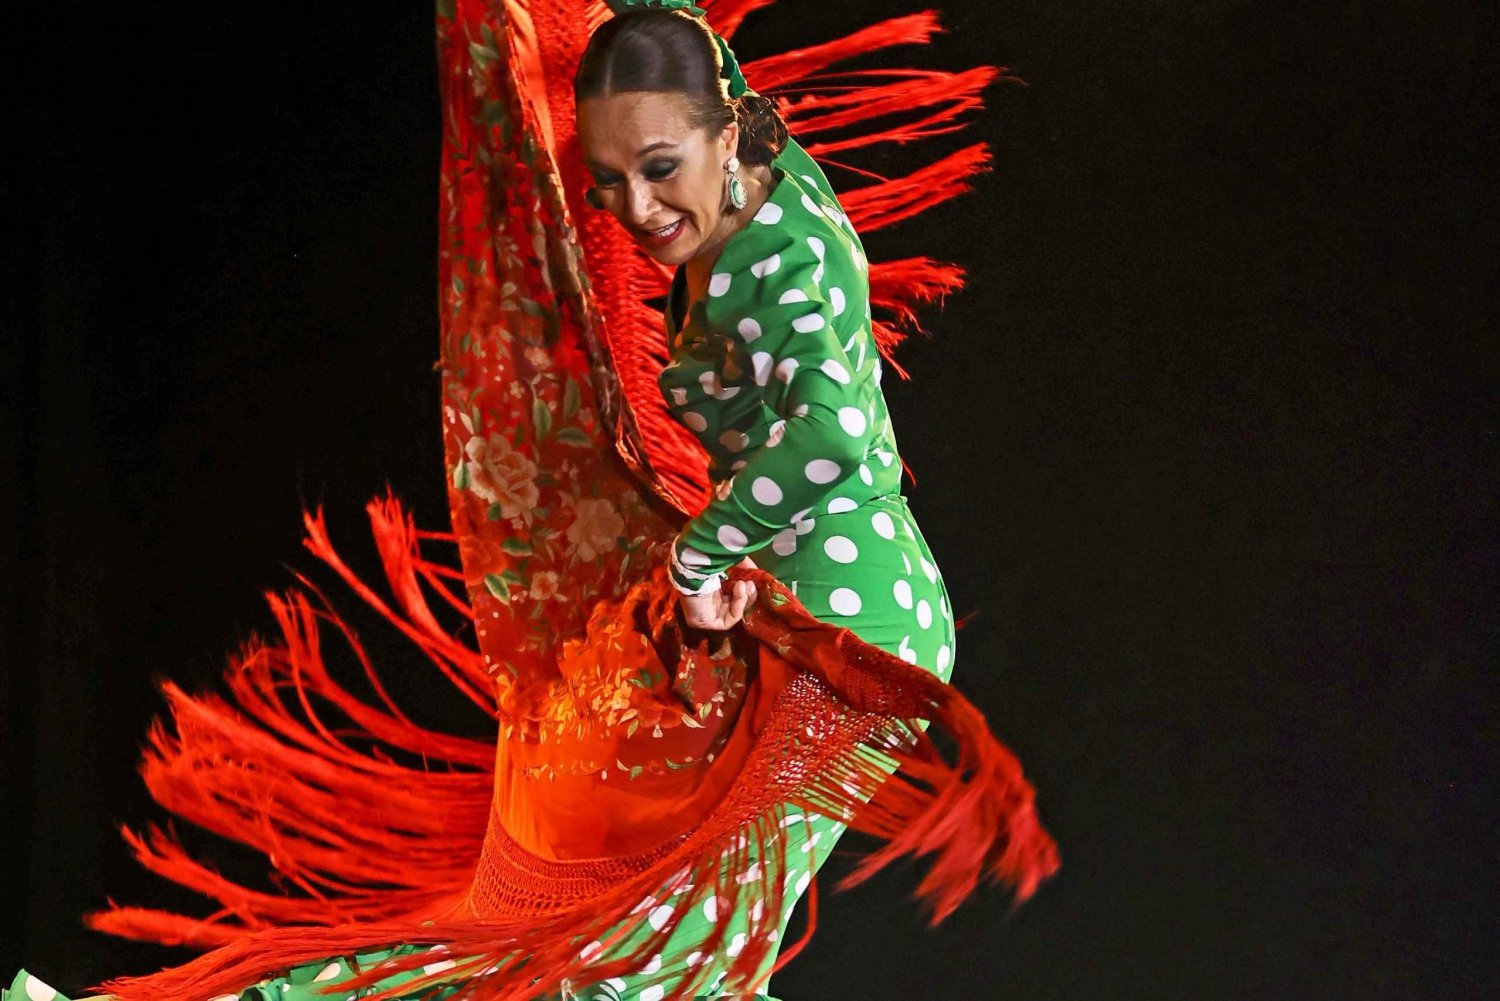 Palma: Flamencoshow på Tablao Flamenco Alma med tilhørende drink